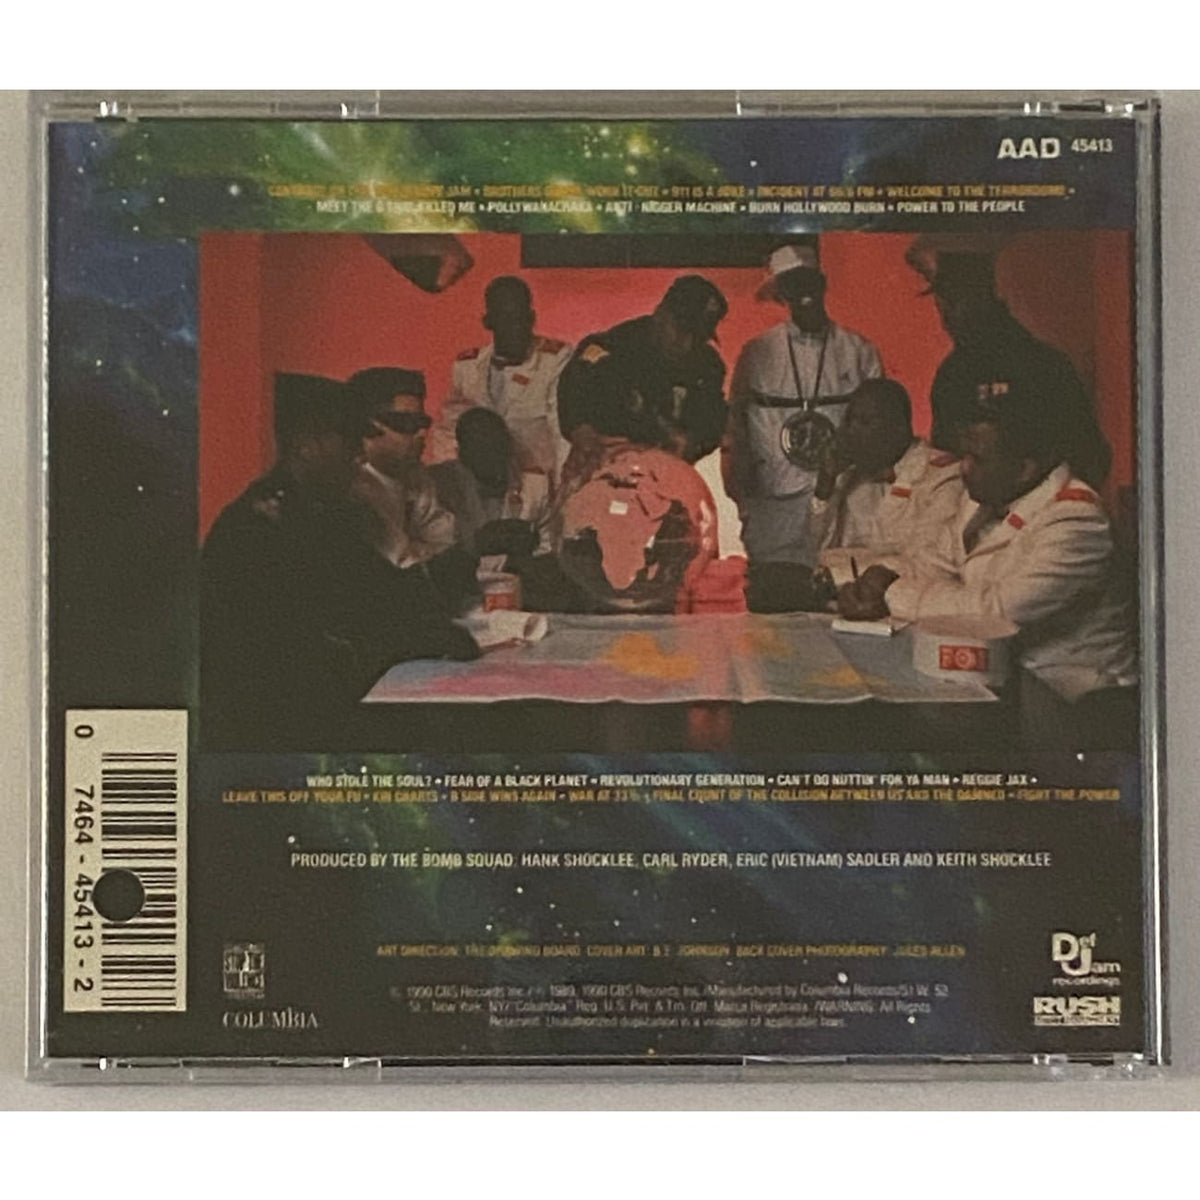 musicgoldmine.com - Public Enemy Fear of a Black Planet 1990 CD